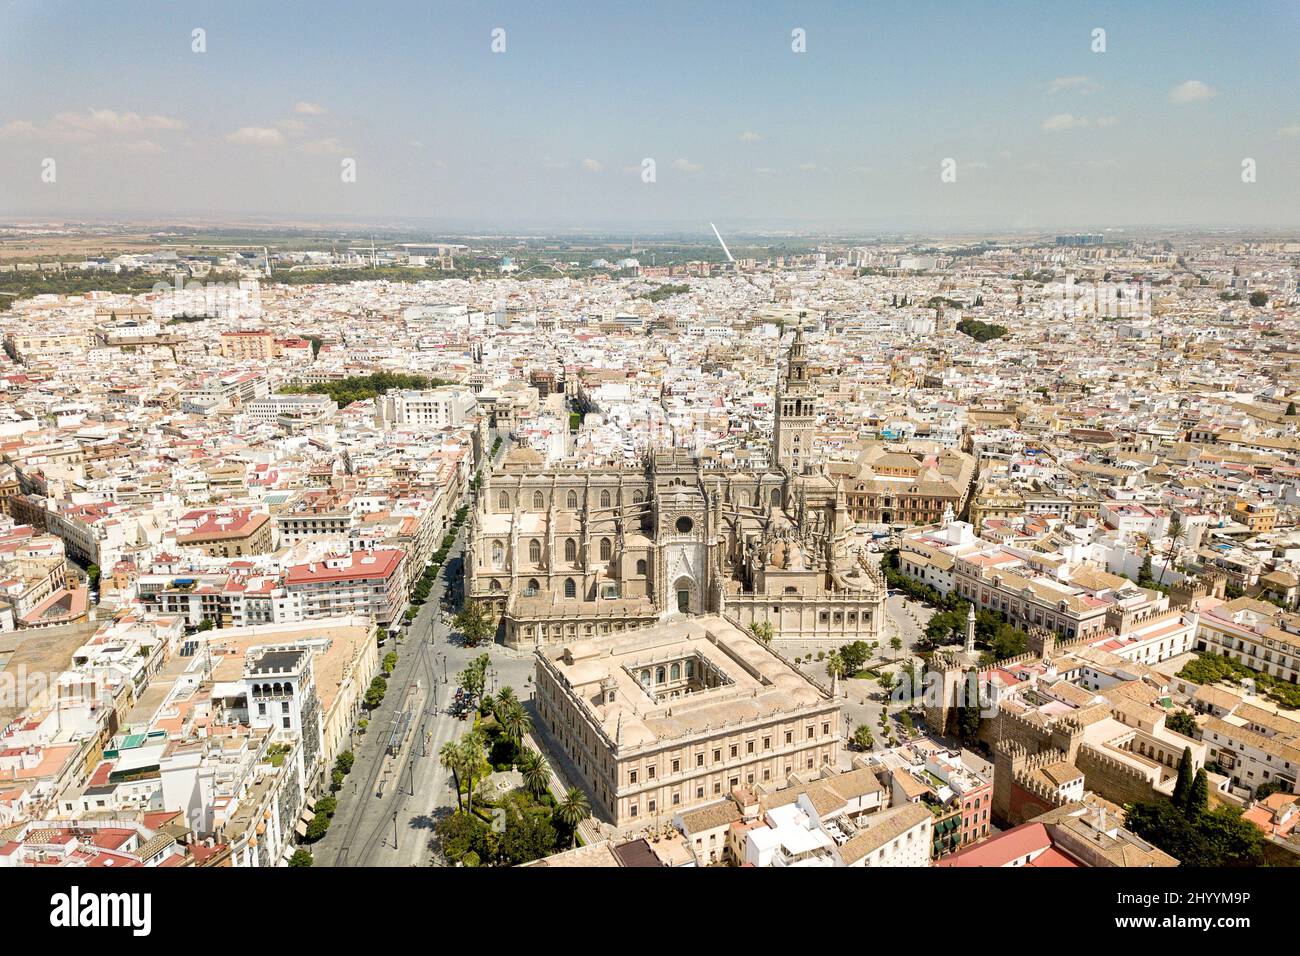 Panorama-Luftperspektive der Kathedrale von Sevilla. Blick von oben, vor der Kathedrale befindet sich das Gebäude des 'Archivos de Indias'. Stockfoto